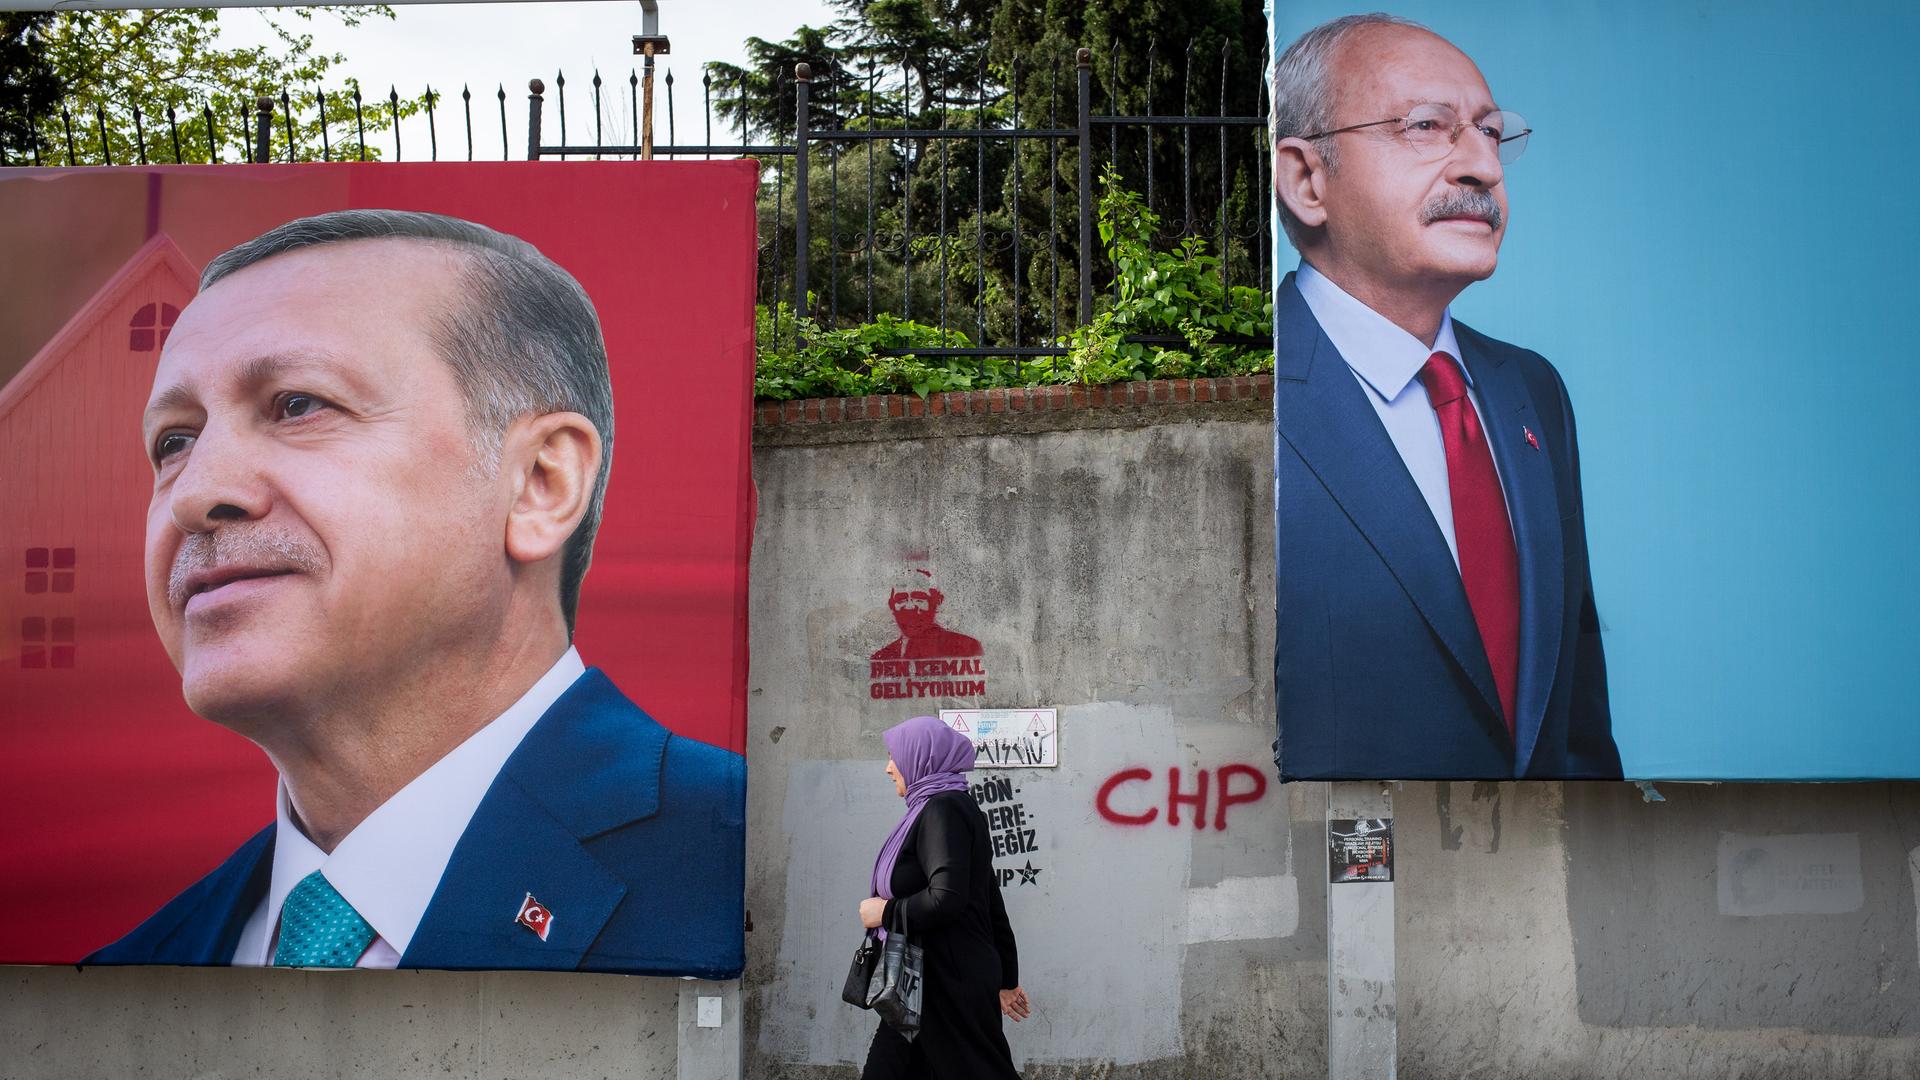 An einer Straße in Istanbul hängen große Werbeplakate von Langzeitpräsident Erdogan und Herausforderer Kemal Kilicdaroglu. Eine Frau geht an den Plakaten entlang.